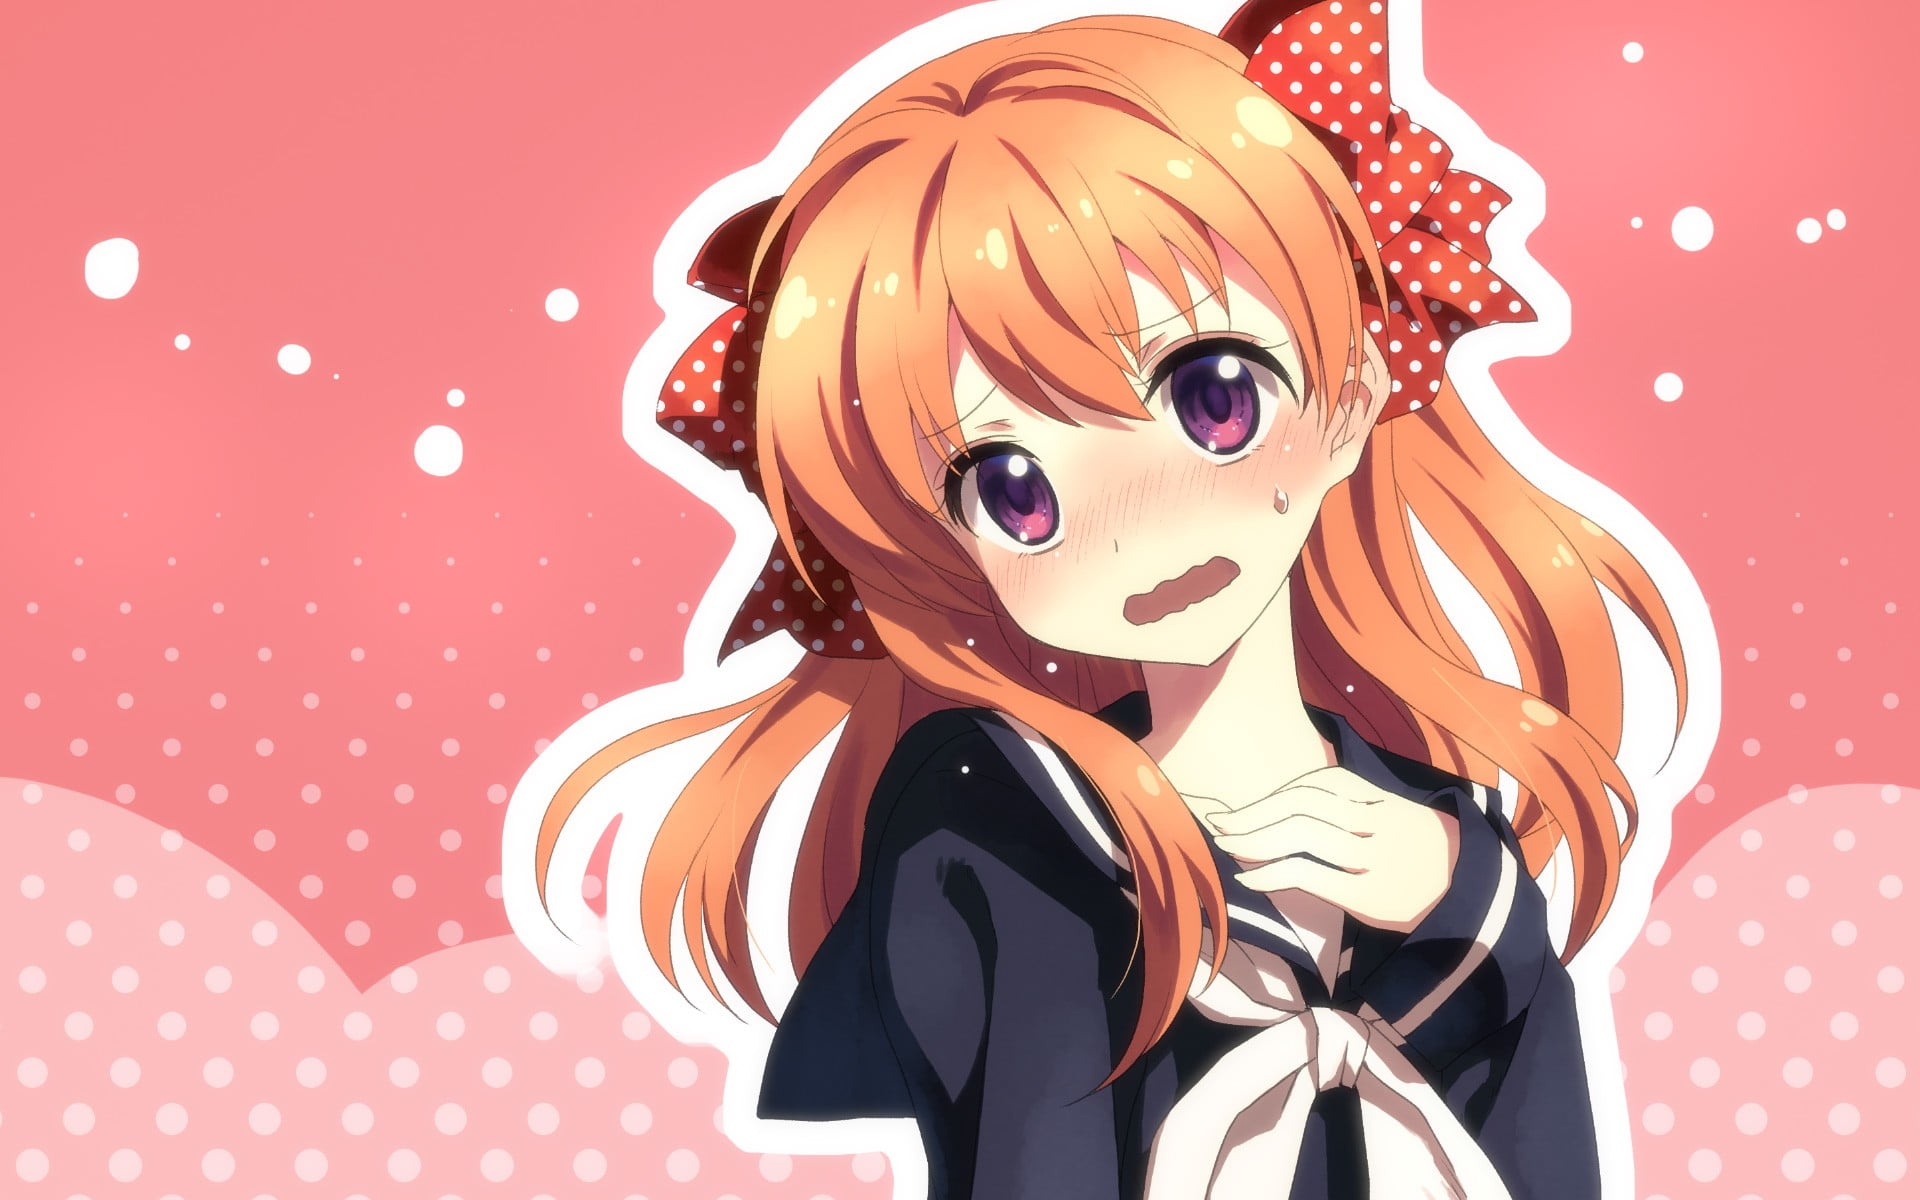 female anime character in school uniform illustration, anime girls